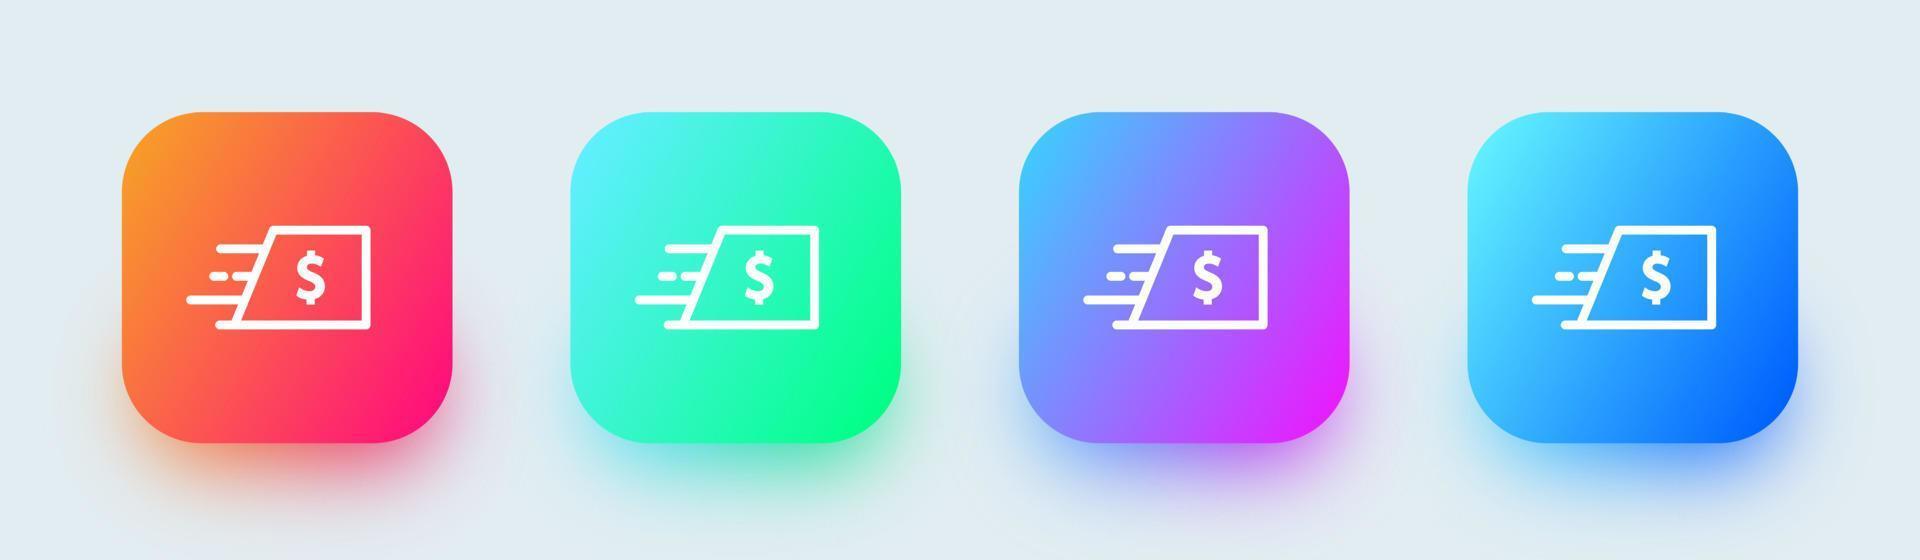 envoyer l'icône de ligne d'argent dans des couleurs dégradées carrées. signes de paiement illustration vectorielle. vecteur